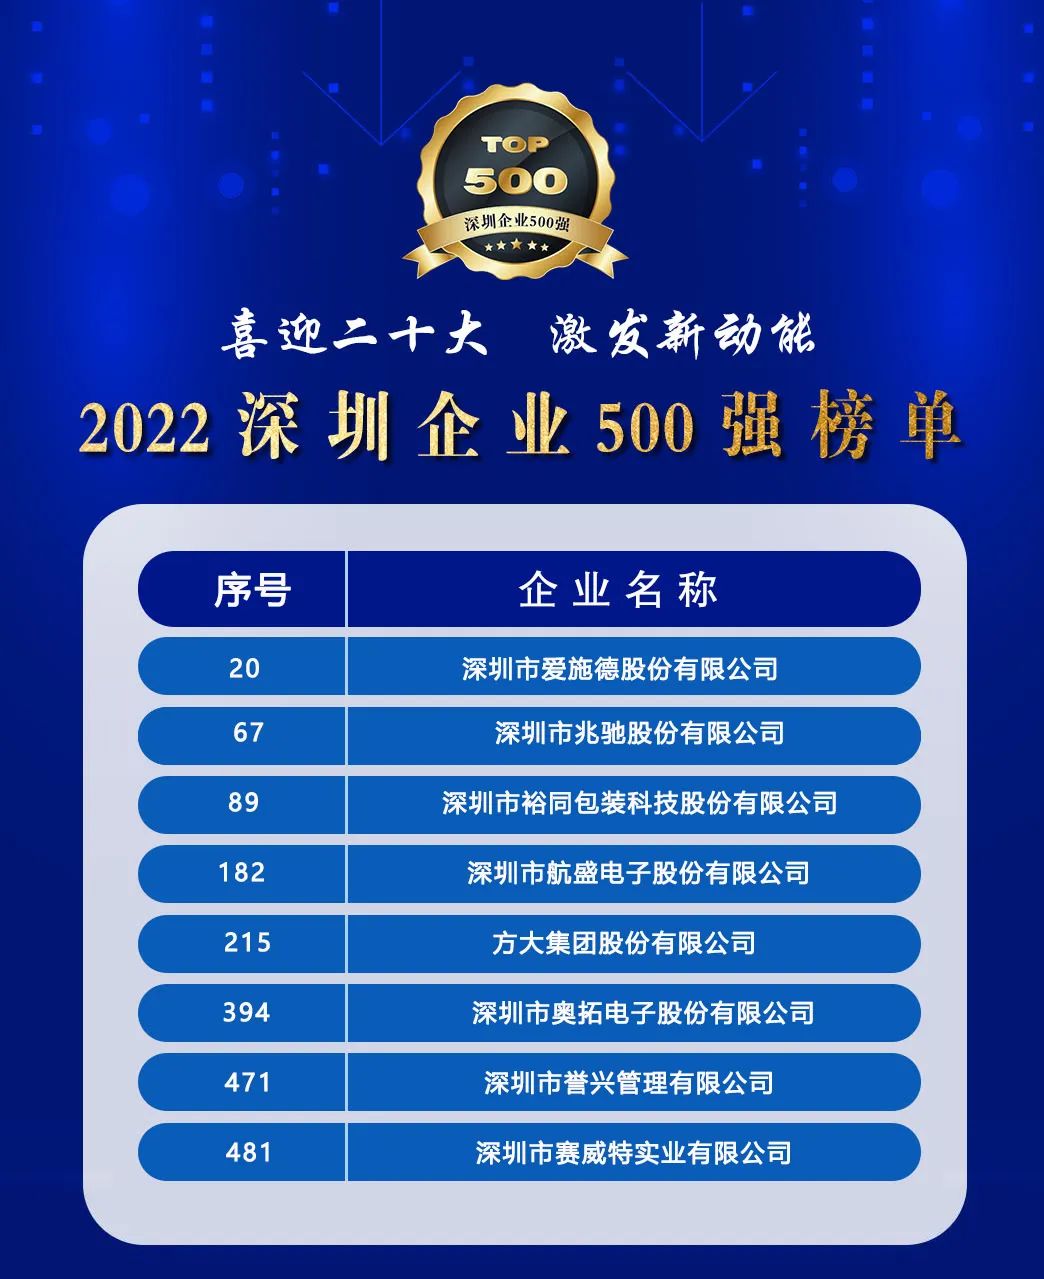 我会8家会员企业入选“2022深圳企业500强榜单”